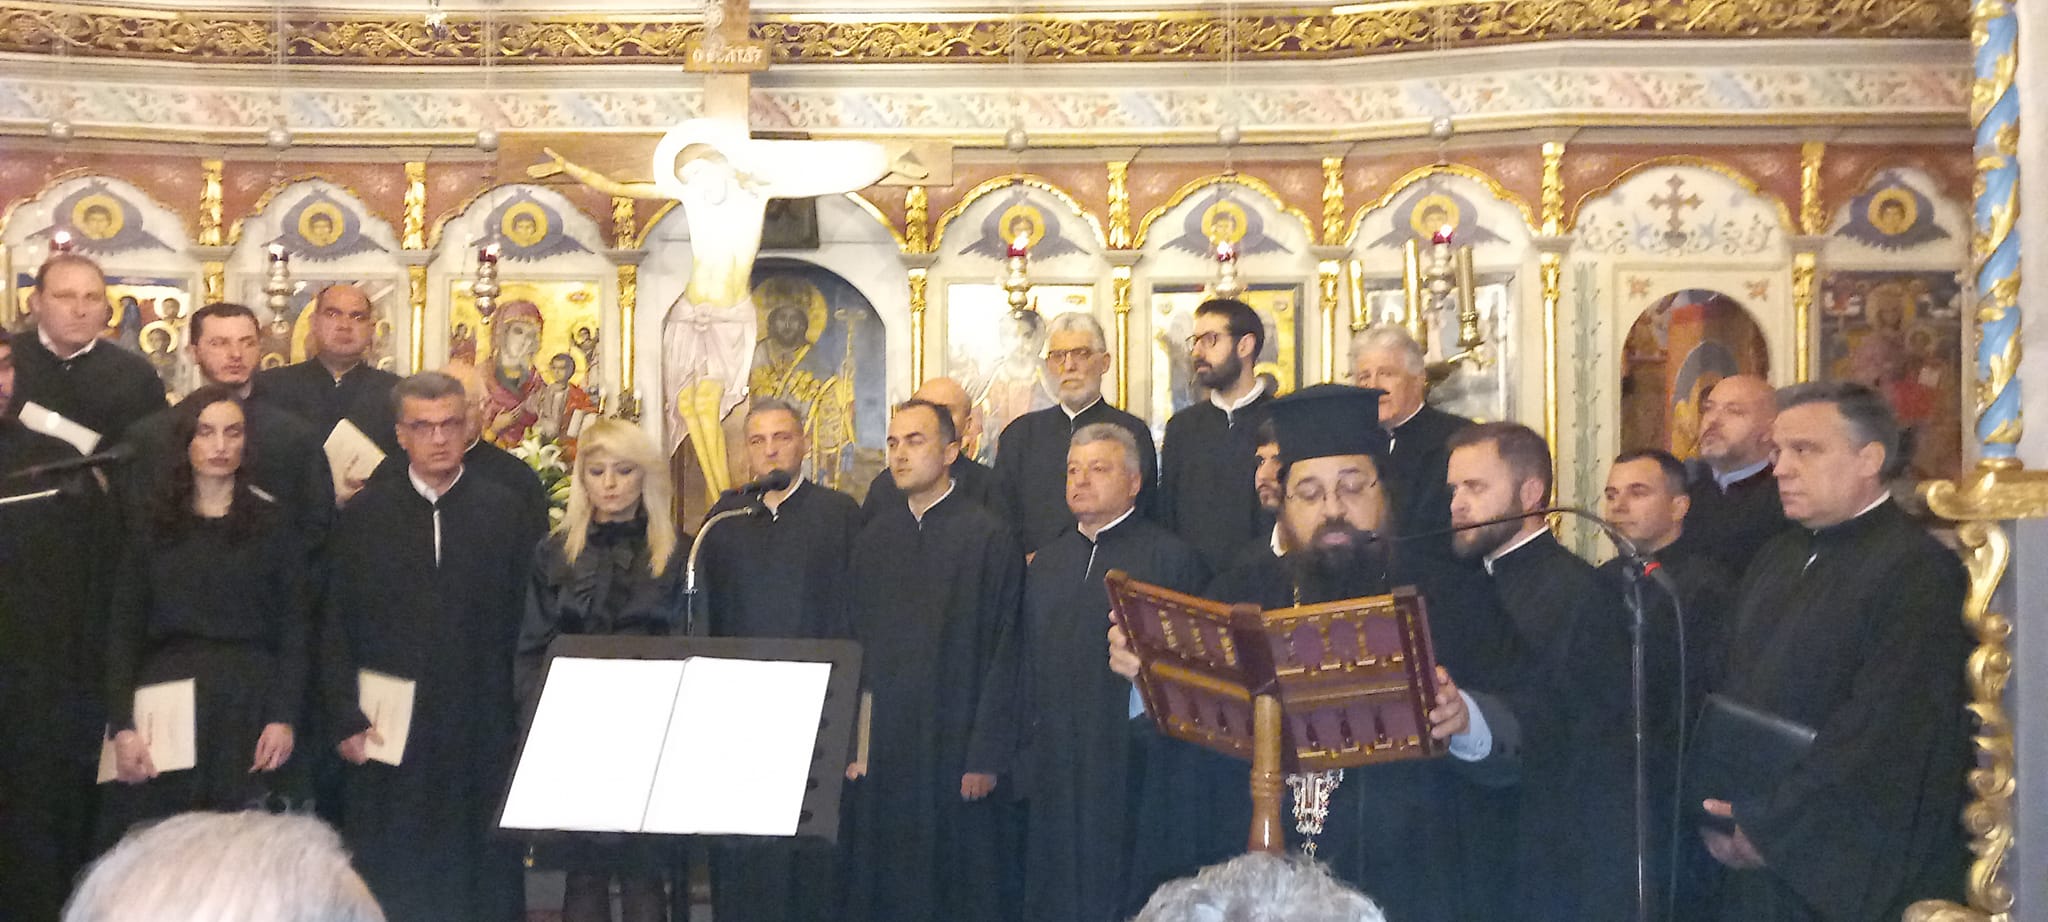 Ιερός Ναός Κοιμήσεως Θεοτόκου Επανομής:  Με κατάνυξη η Εσπερινή συναυλία αφιερωμένη στη Μεγάλη Εβδομάδα